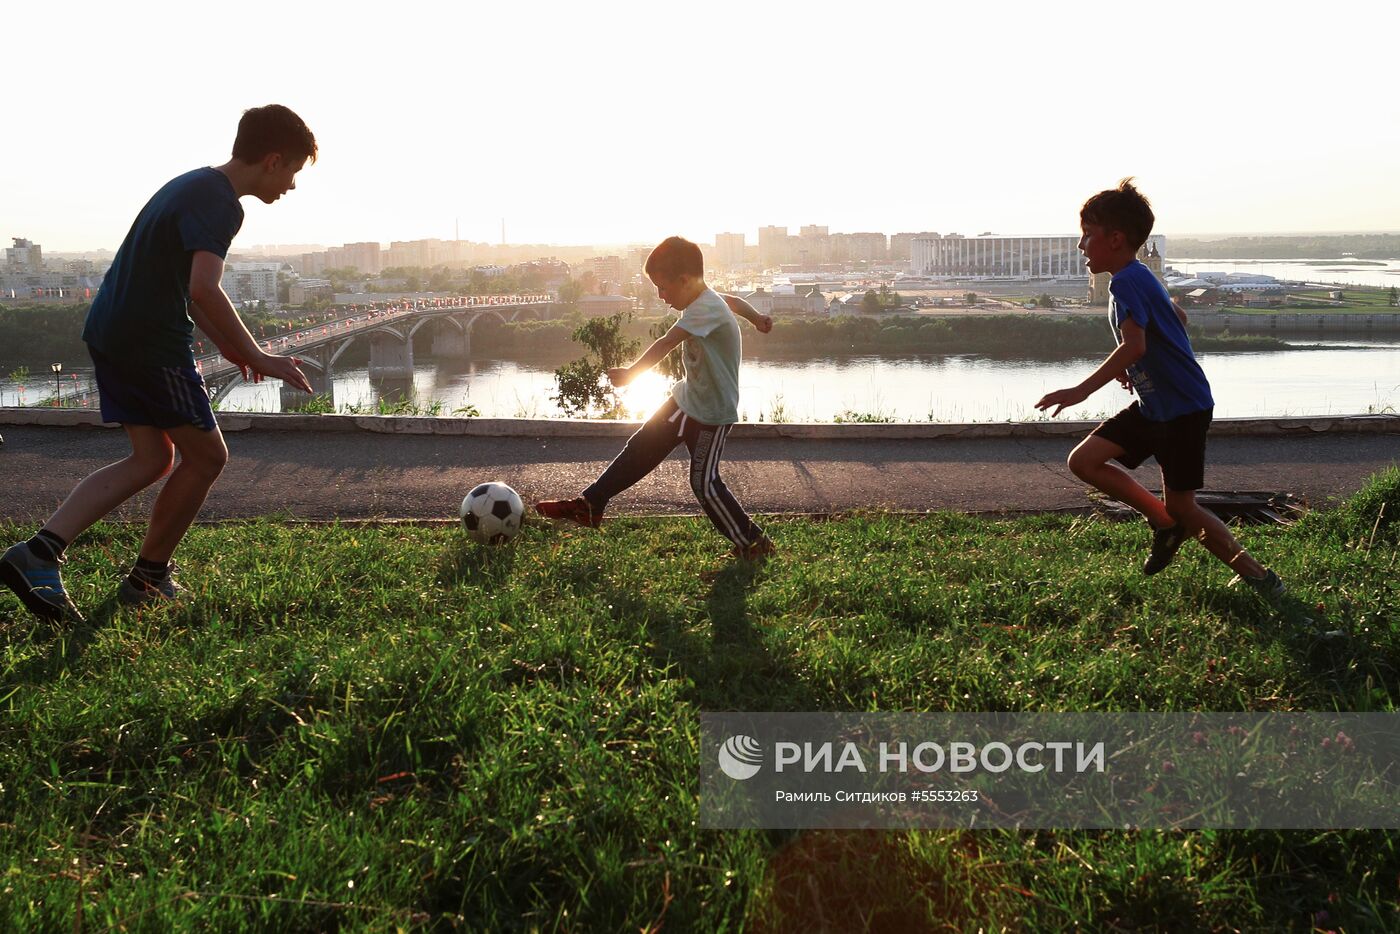 Нижний Новгород во время ЧМ-2018 по футболу